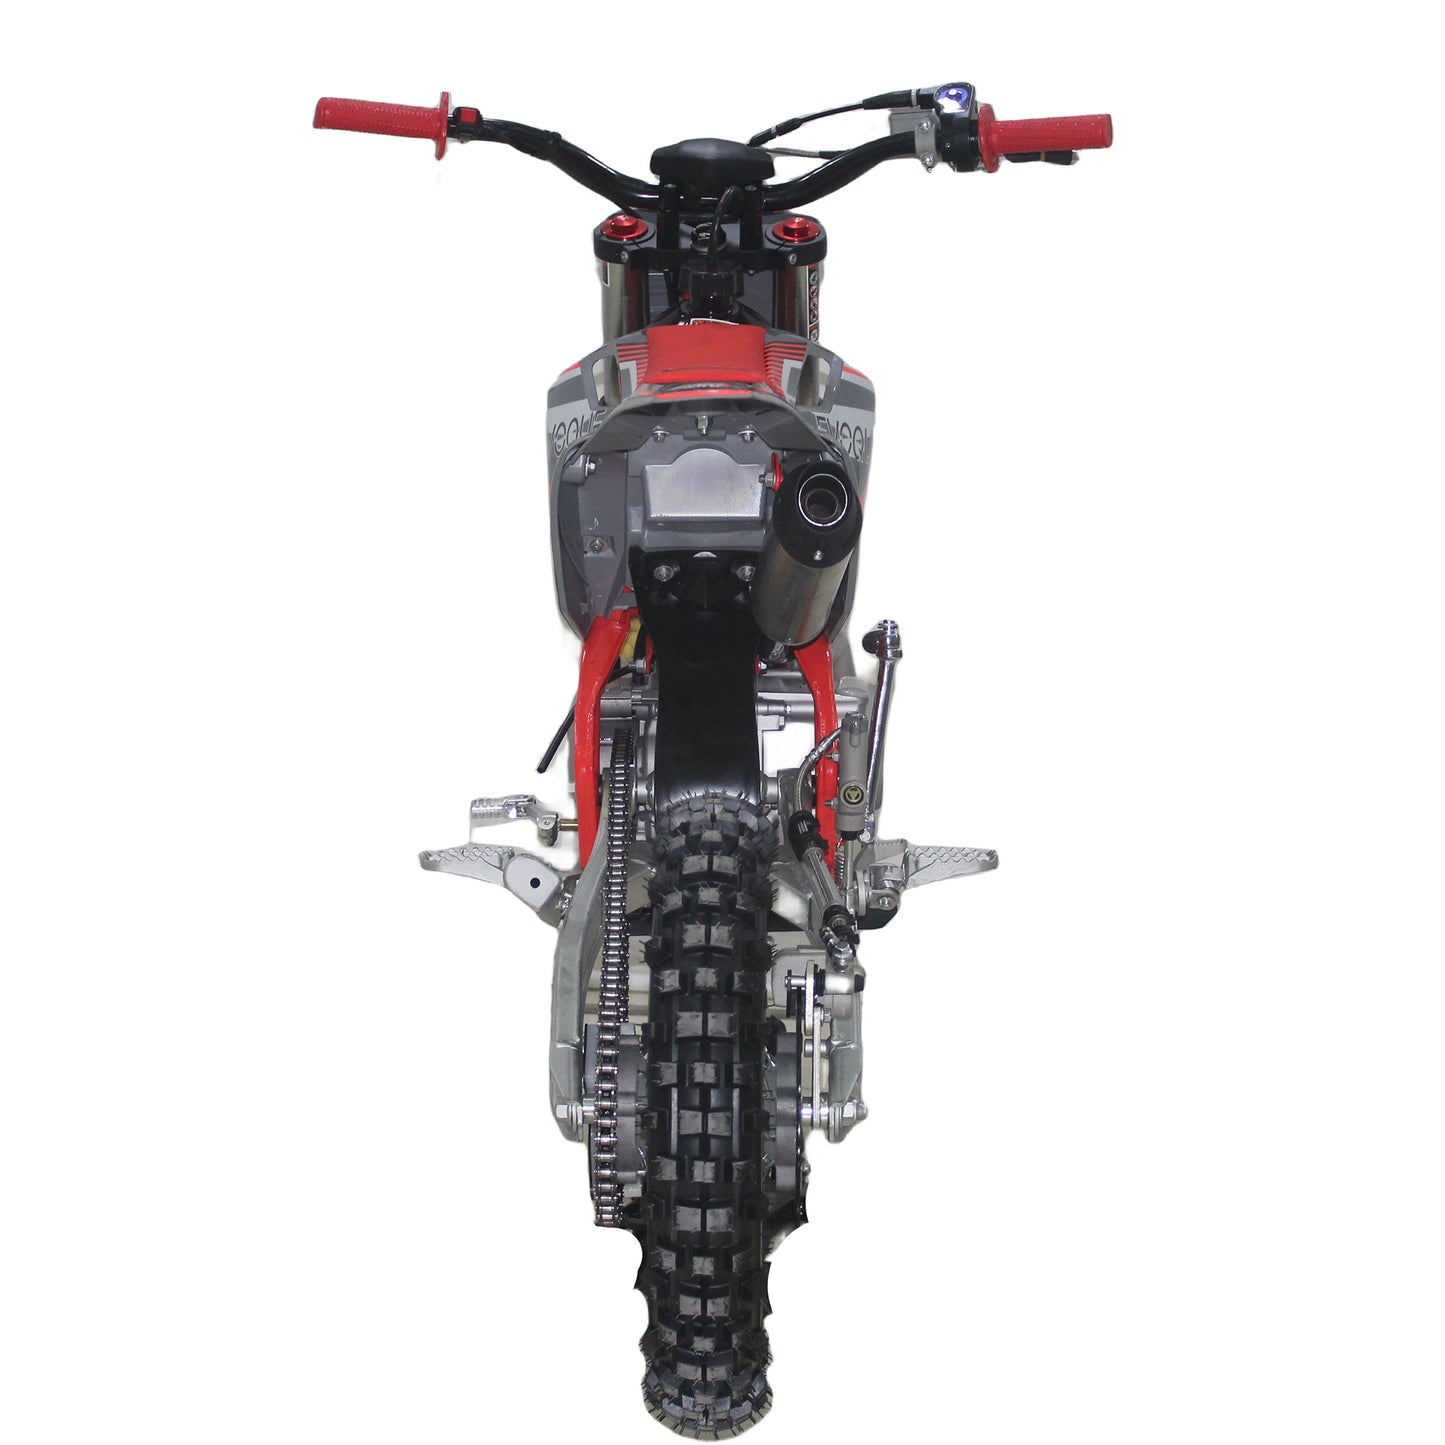 VQ-125R | 125cc Dirt Bike